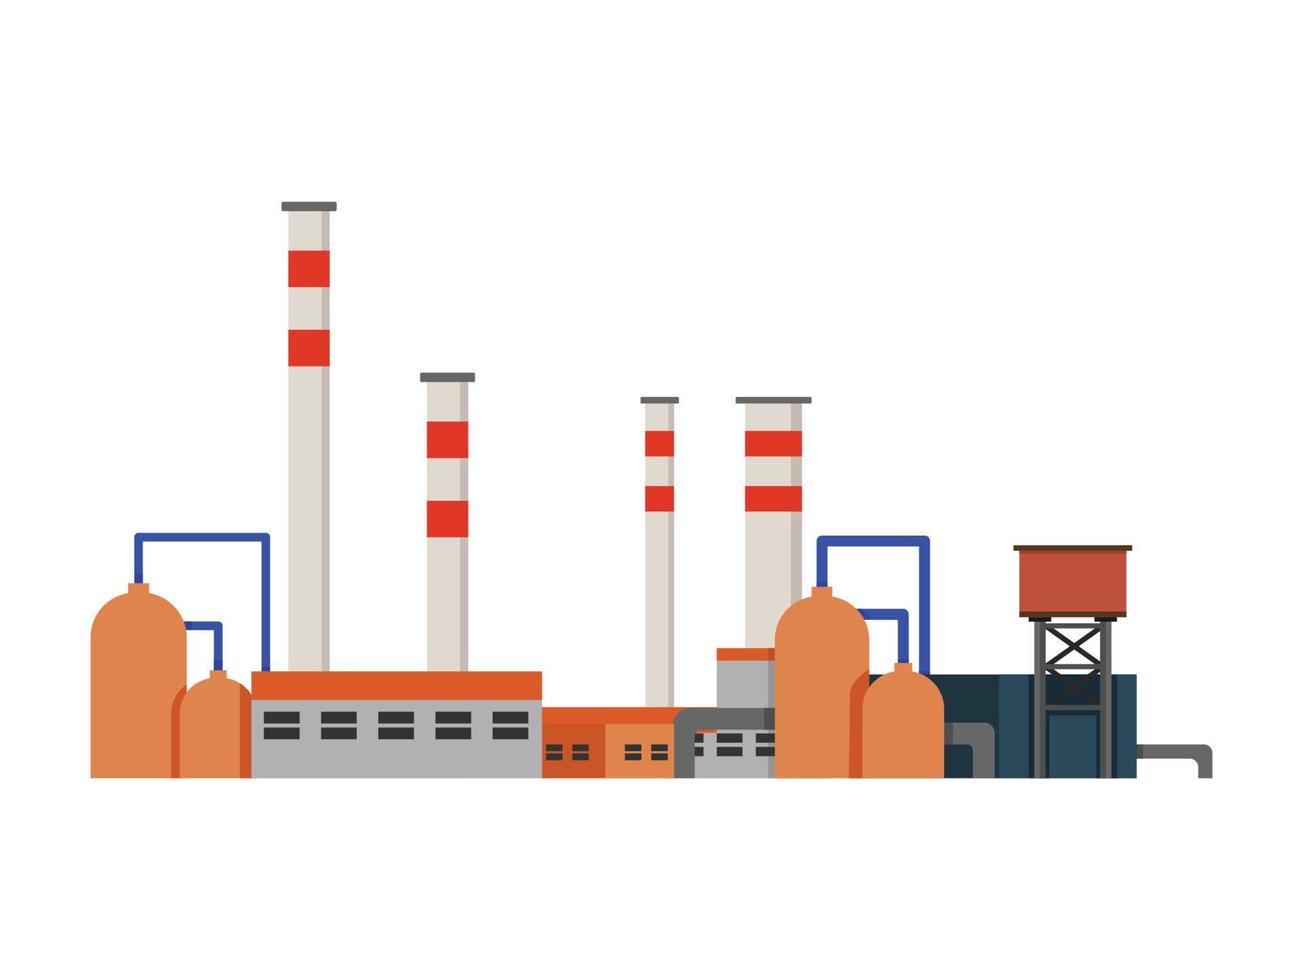 fabrik industriella byggnader kraftverk vektor